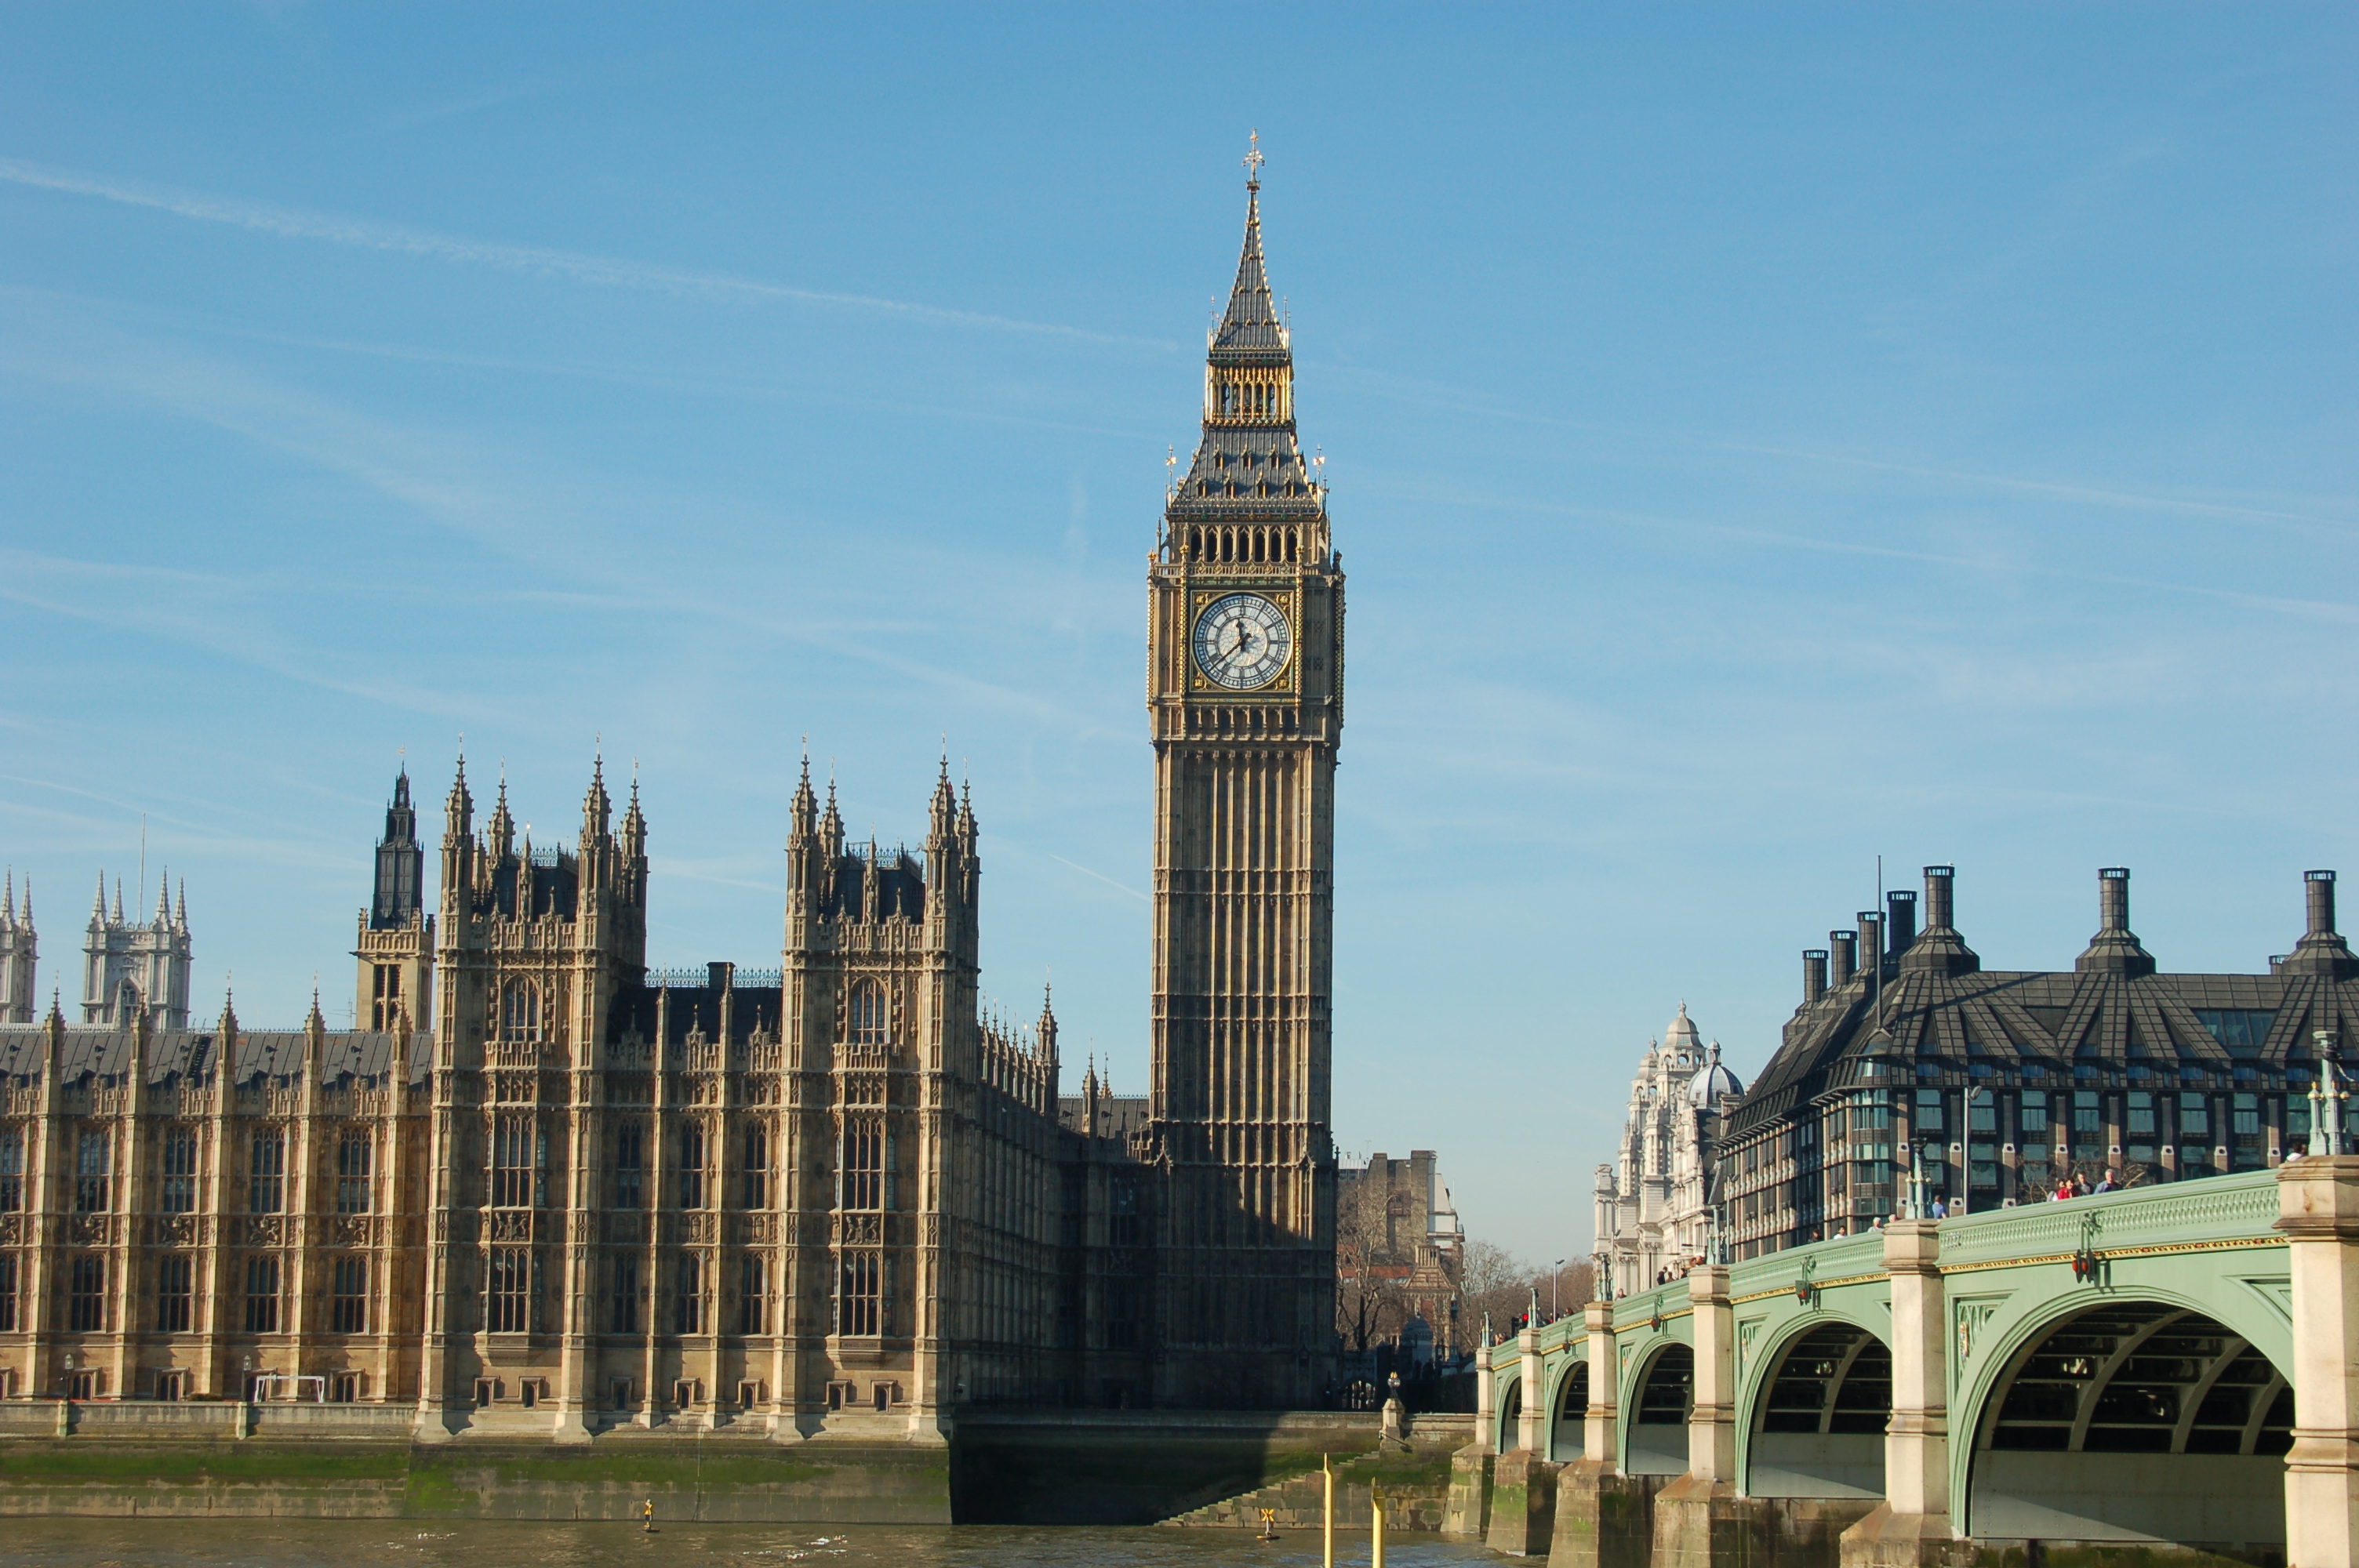 Mein Schiff Landausflug: Der Big Ben in London